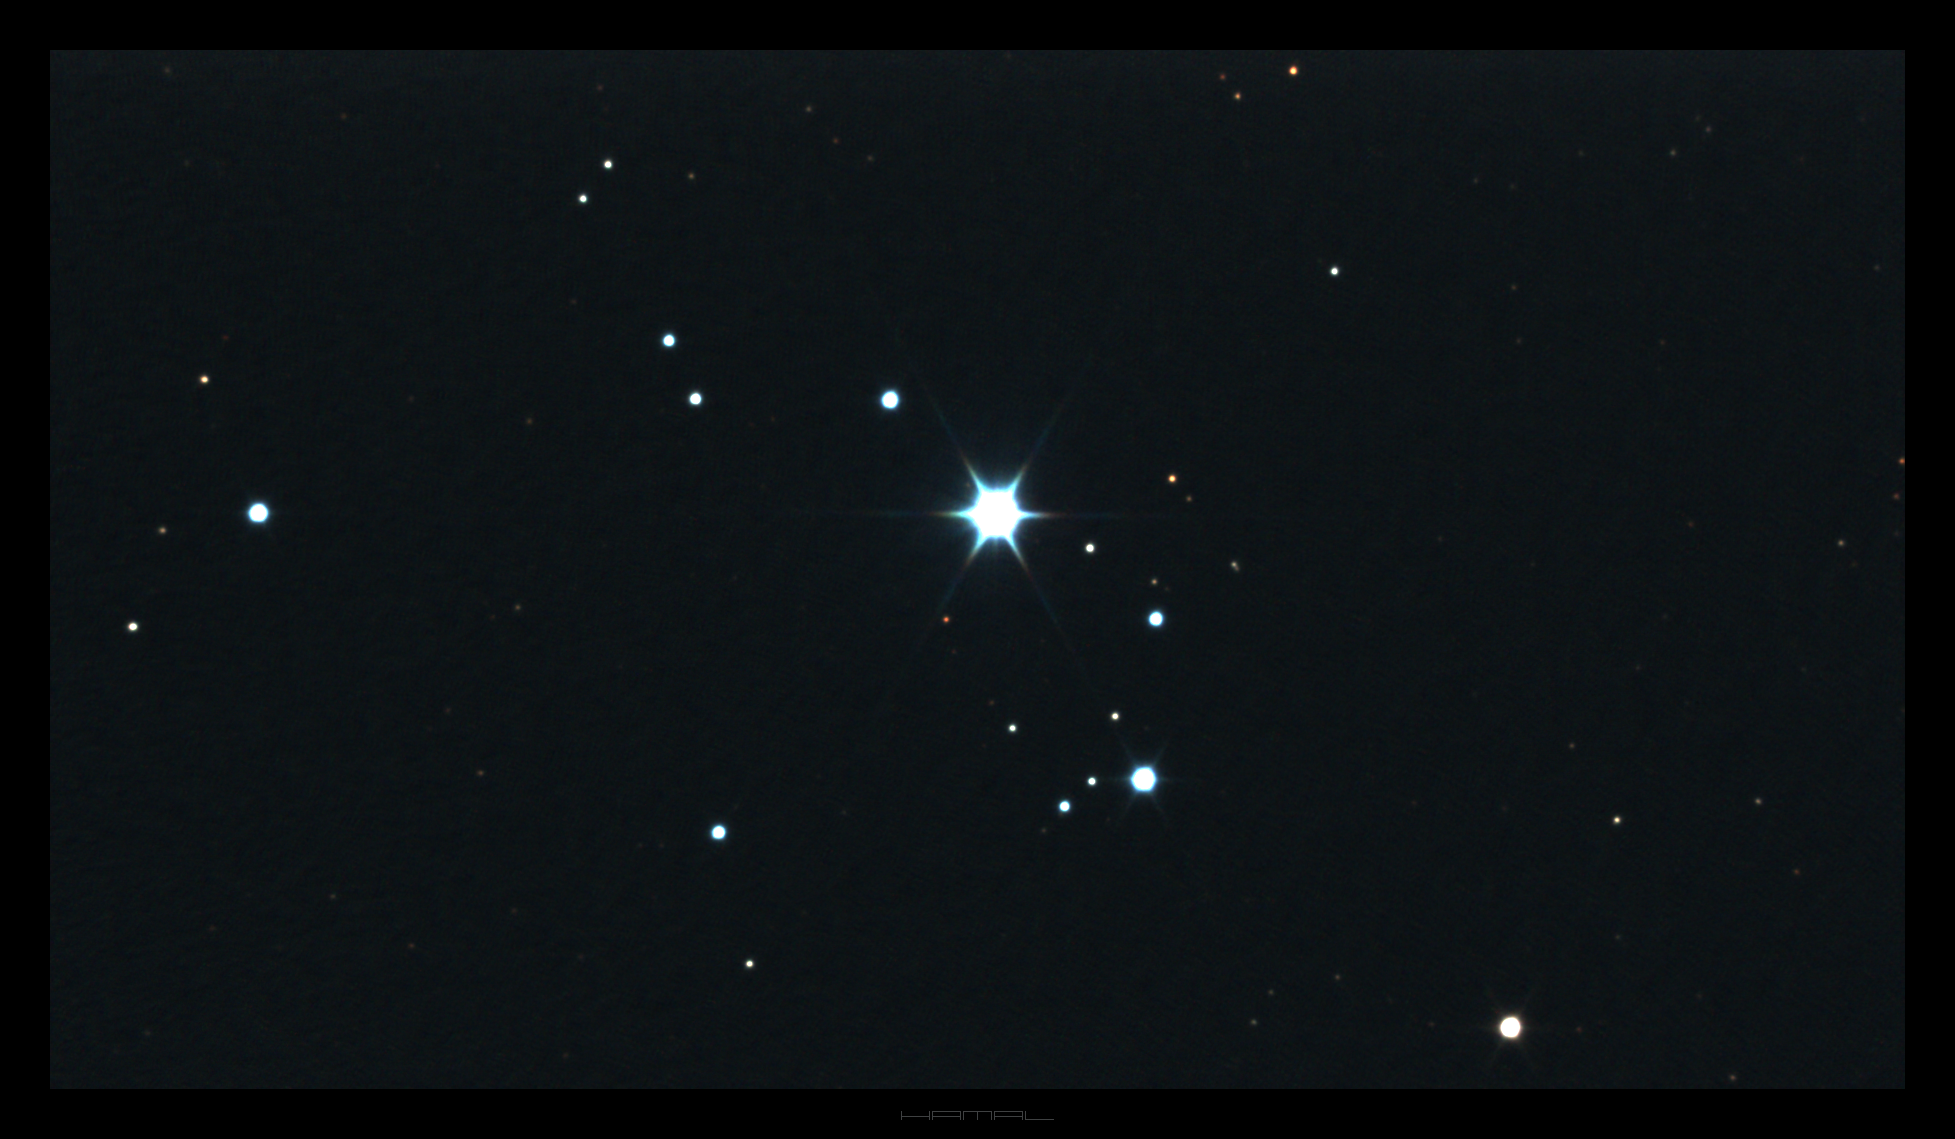 NGC7008